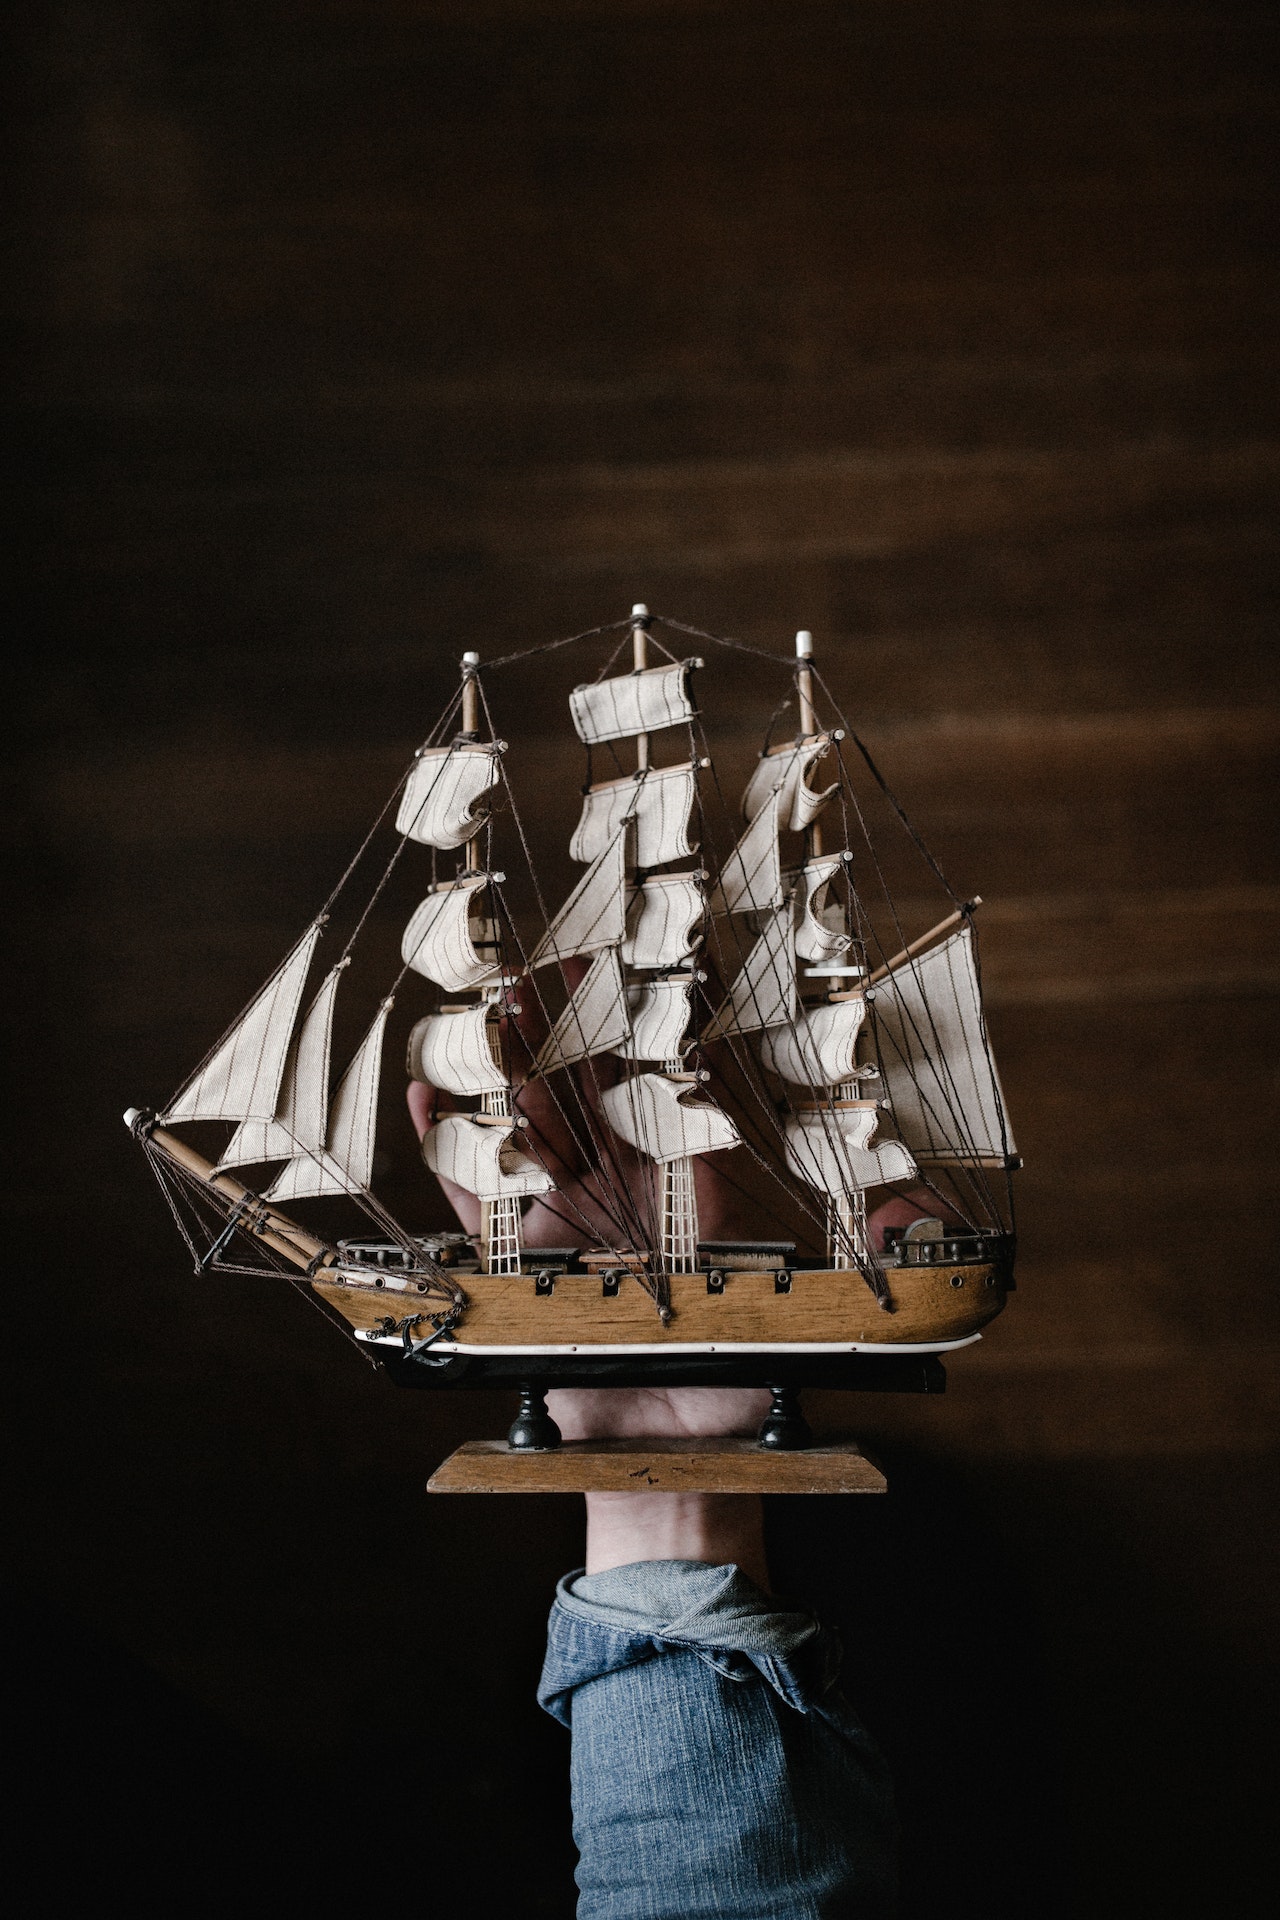 Scheepswrak voor Britse kust blijkt Nederlands oorlogsschip uit 17e eeuw